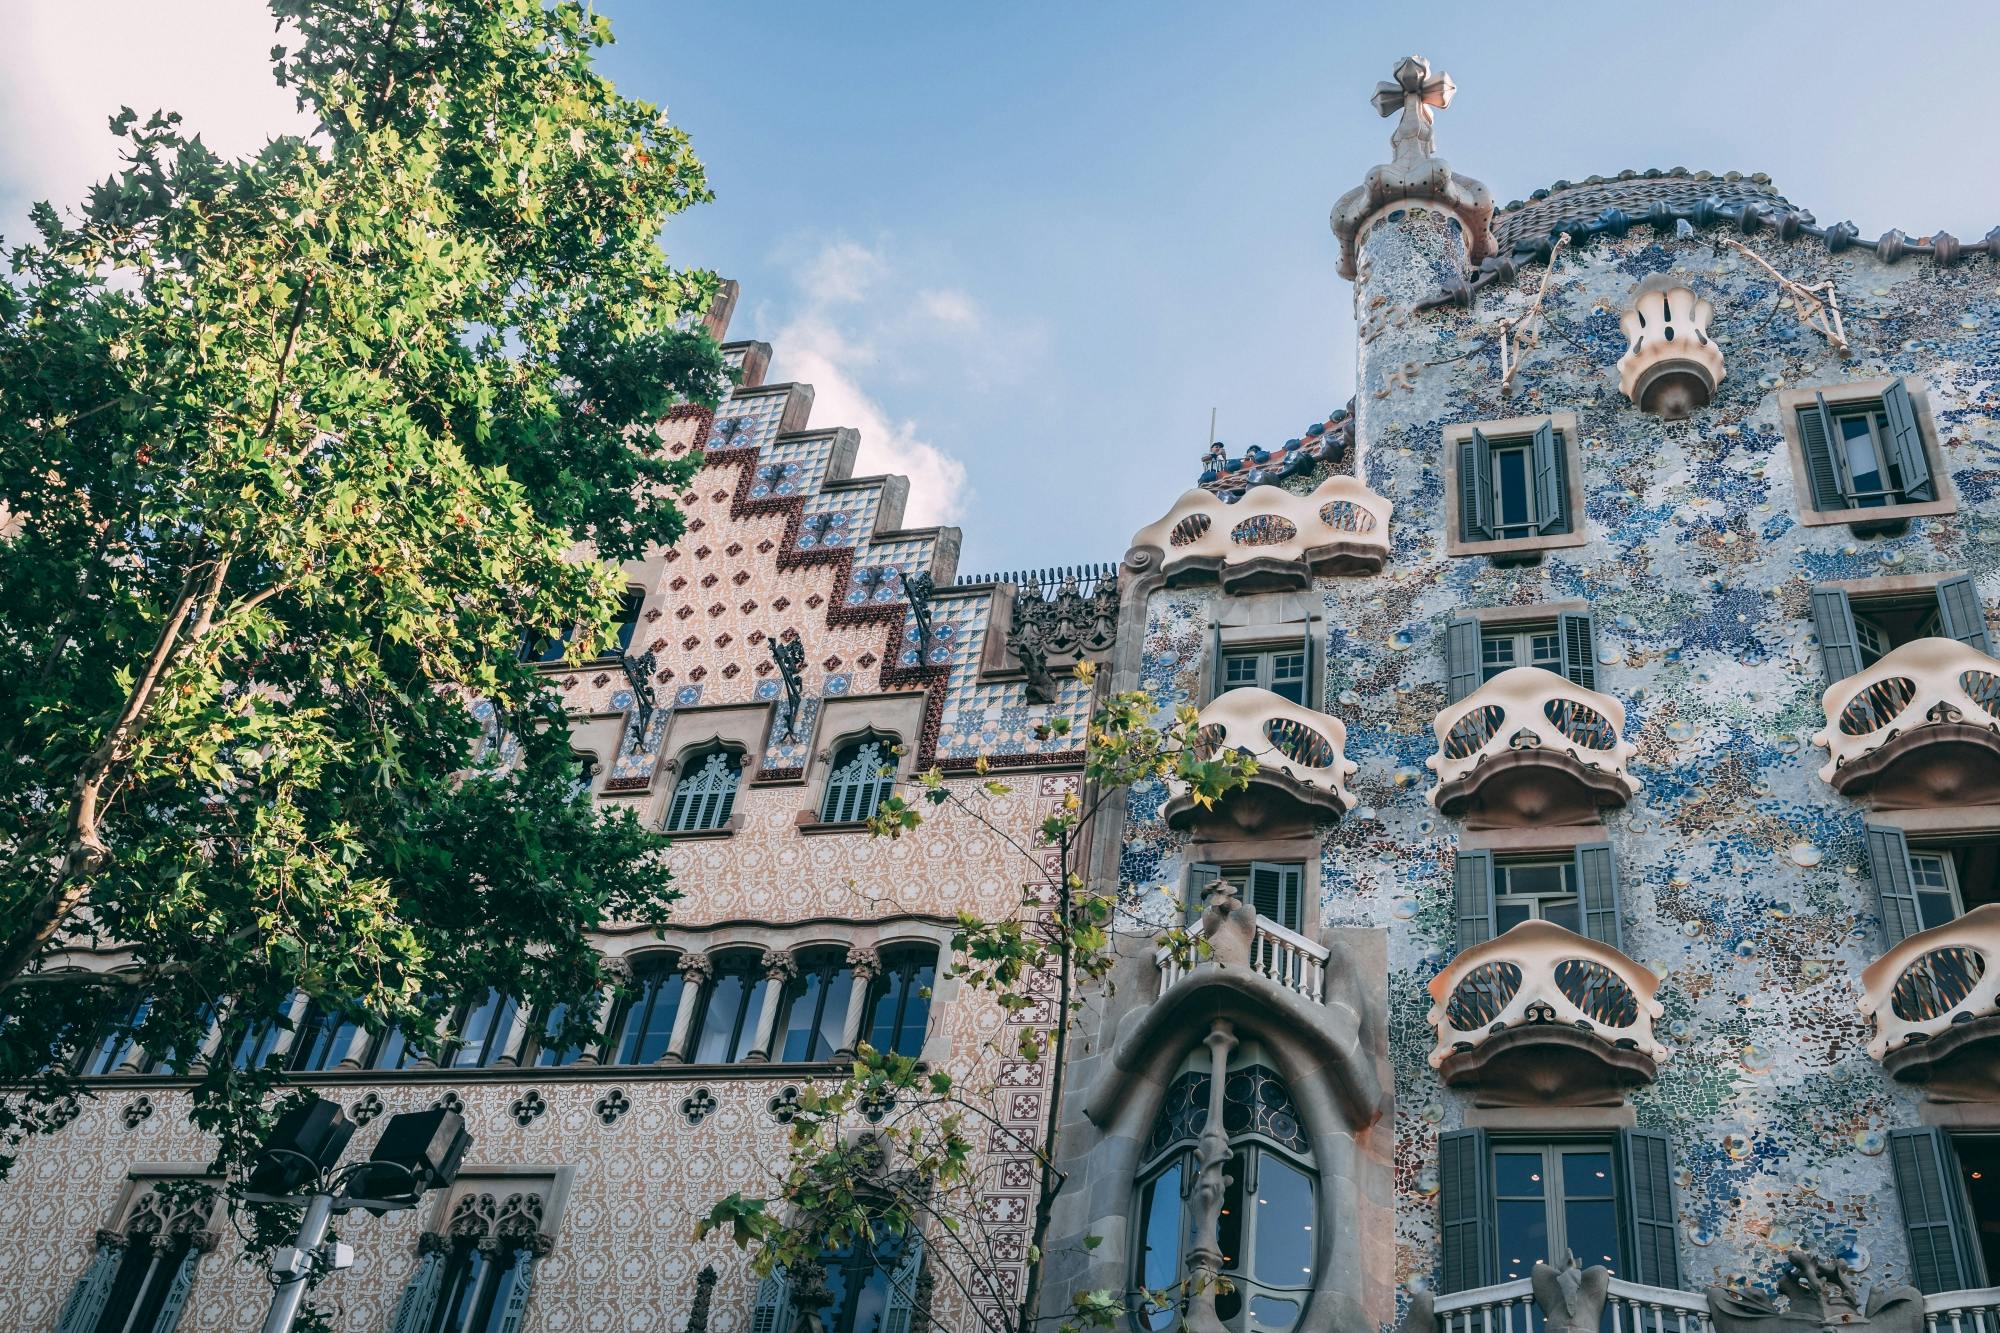 Prywatna piesza wycieczka śladami najlepszych dzieł Gaudíego w Barcelonie z lokalnym przewodnikiem